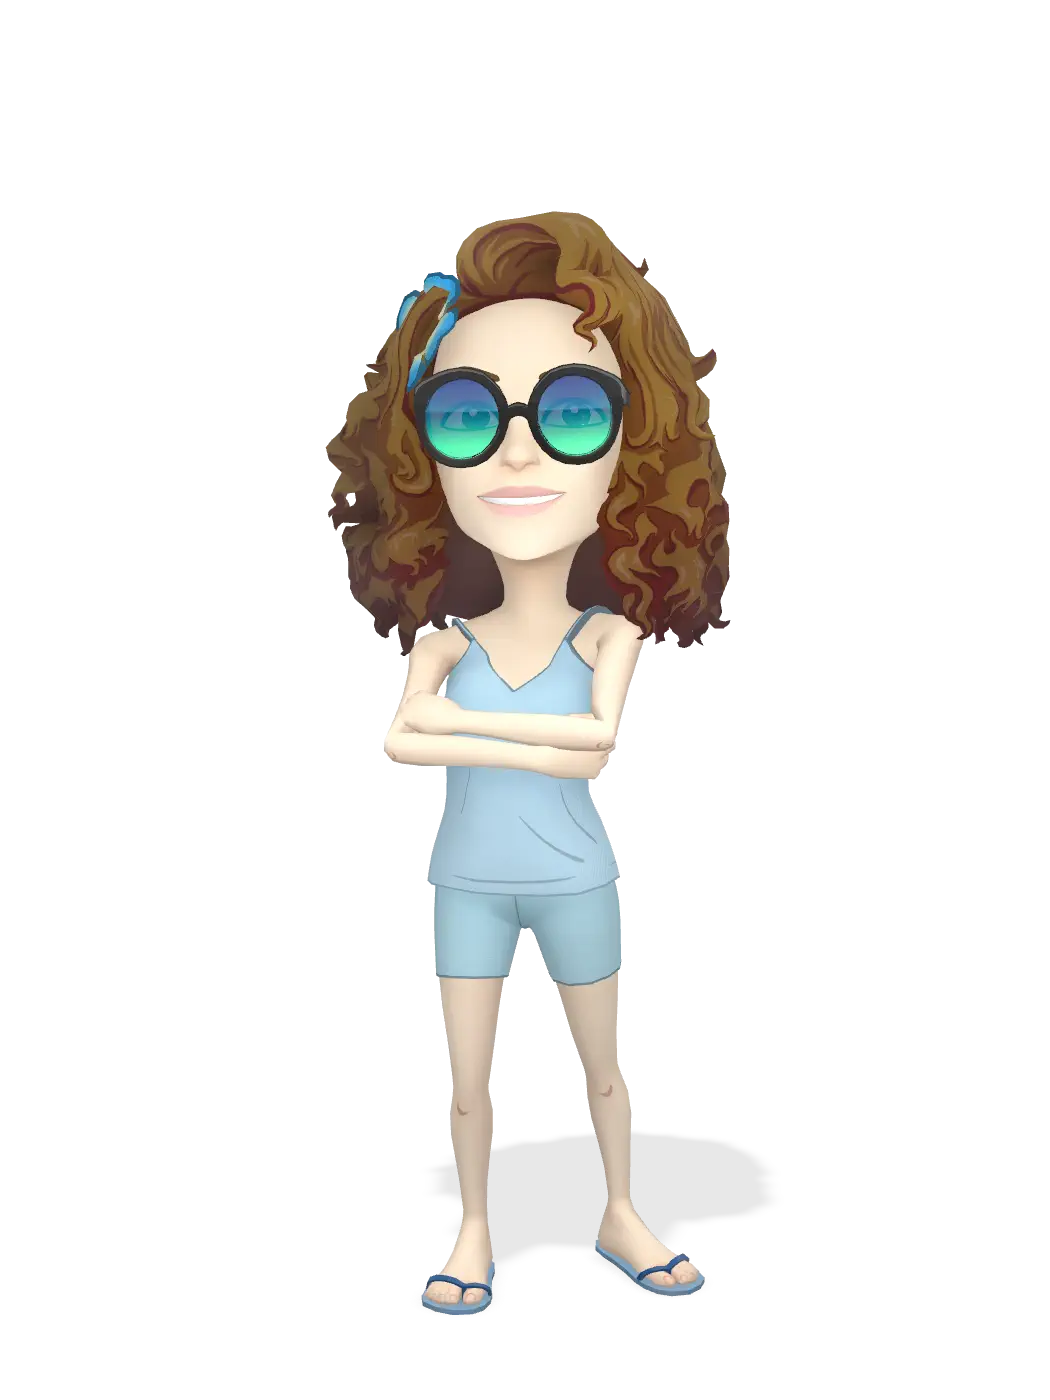 3D Bitmoji for jjquids avatar